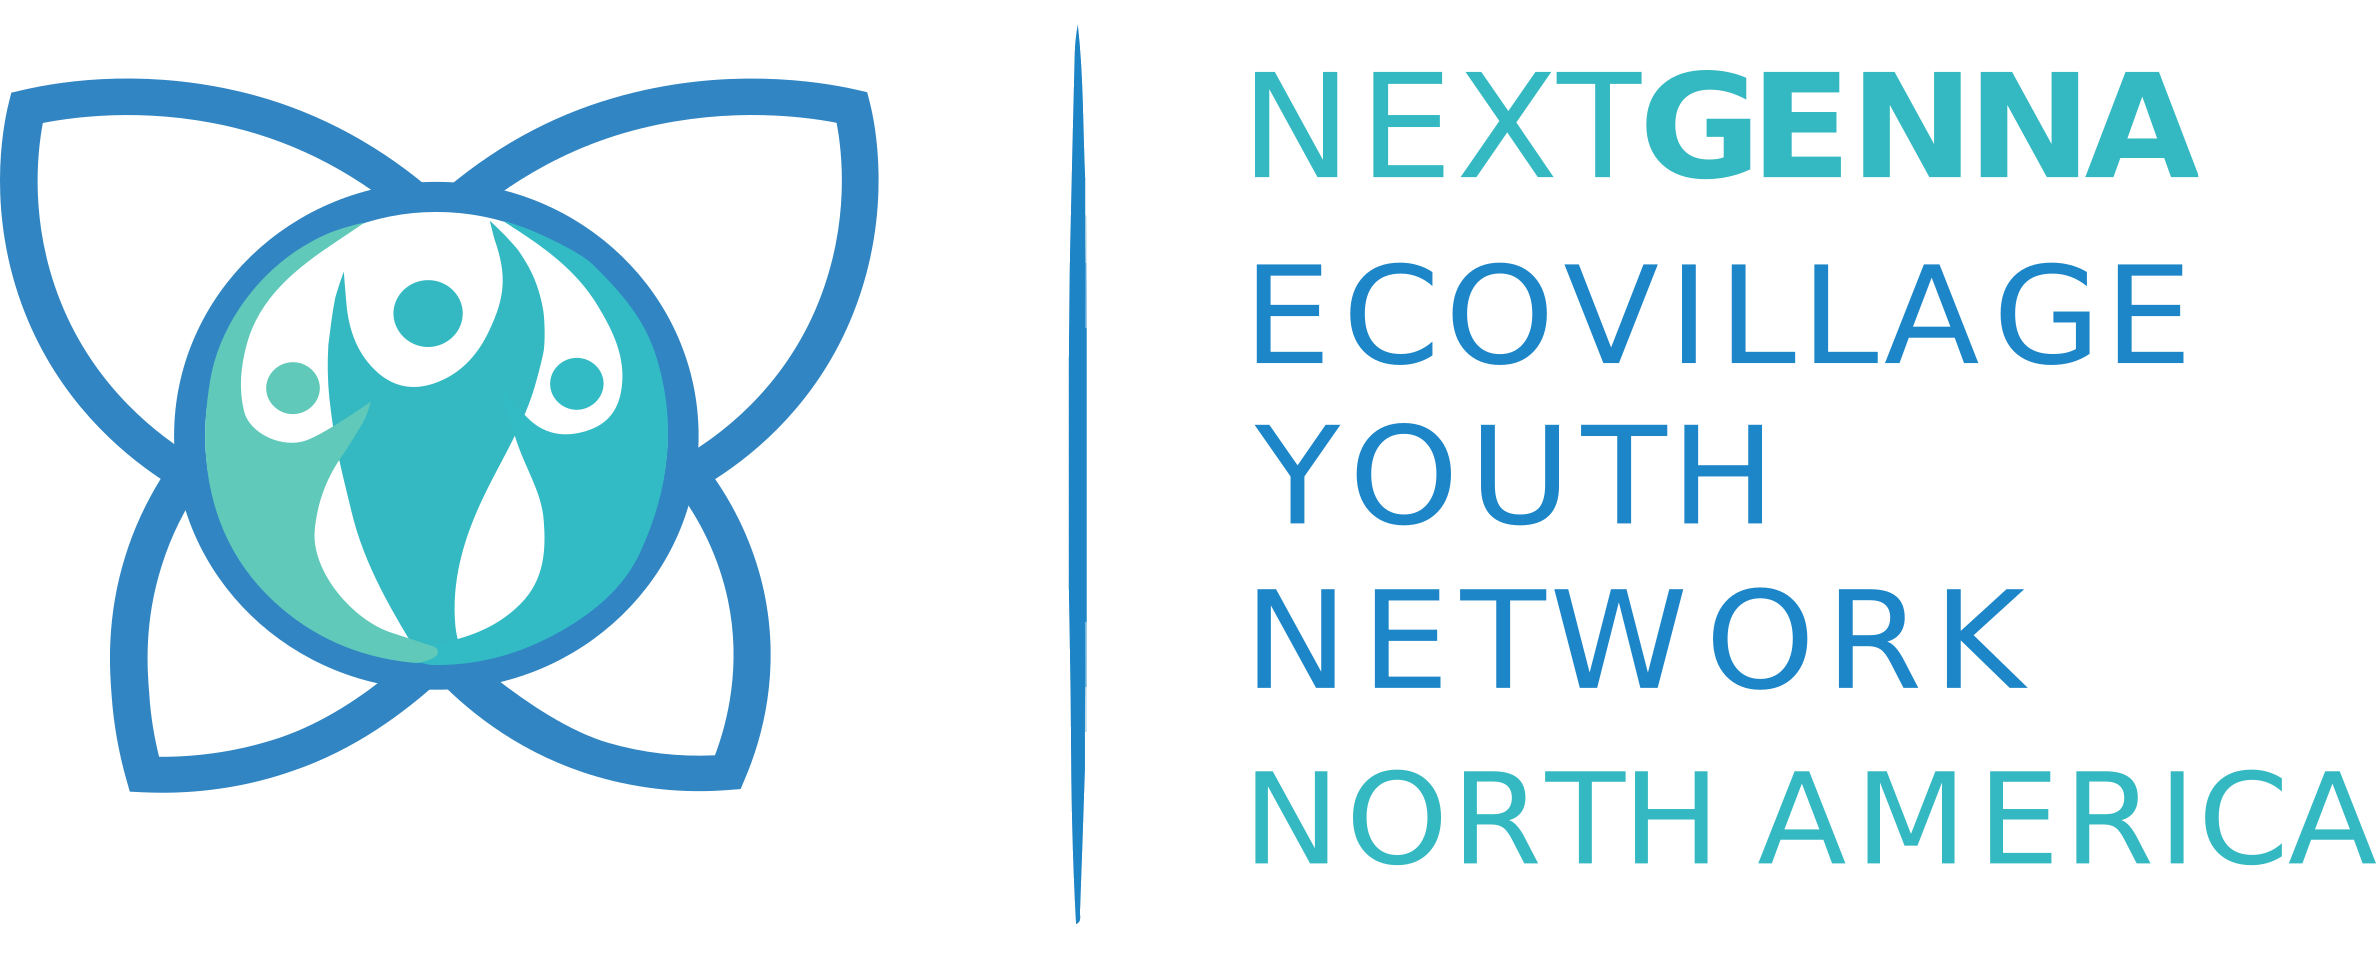 Next GENNA - iniciativa jovem nascida da Global Ecovillage Network (GEN). - Parceiro da Sociocracy for All